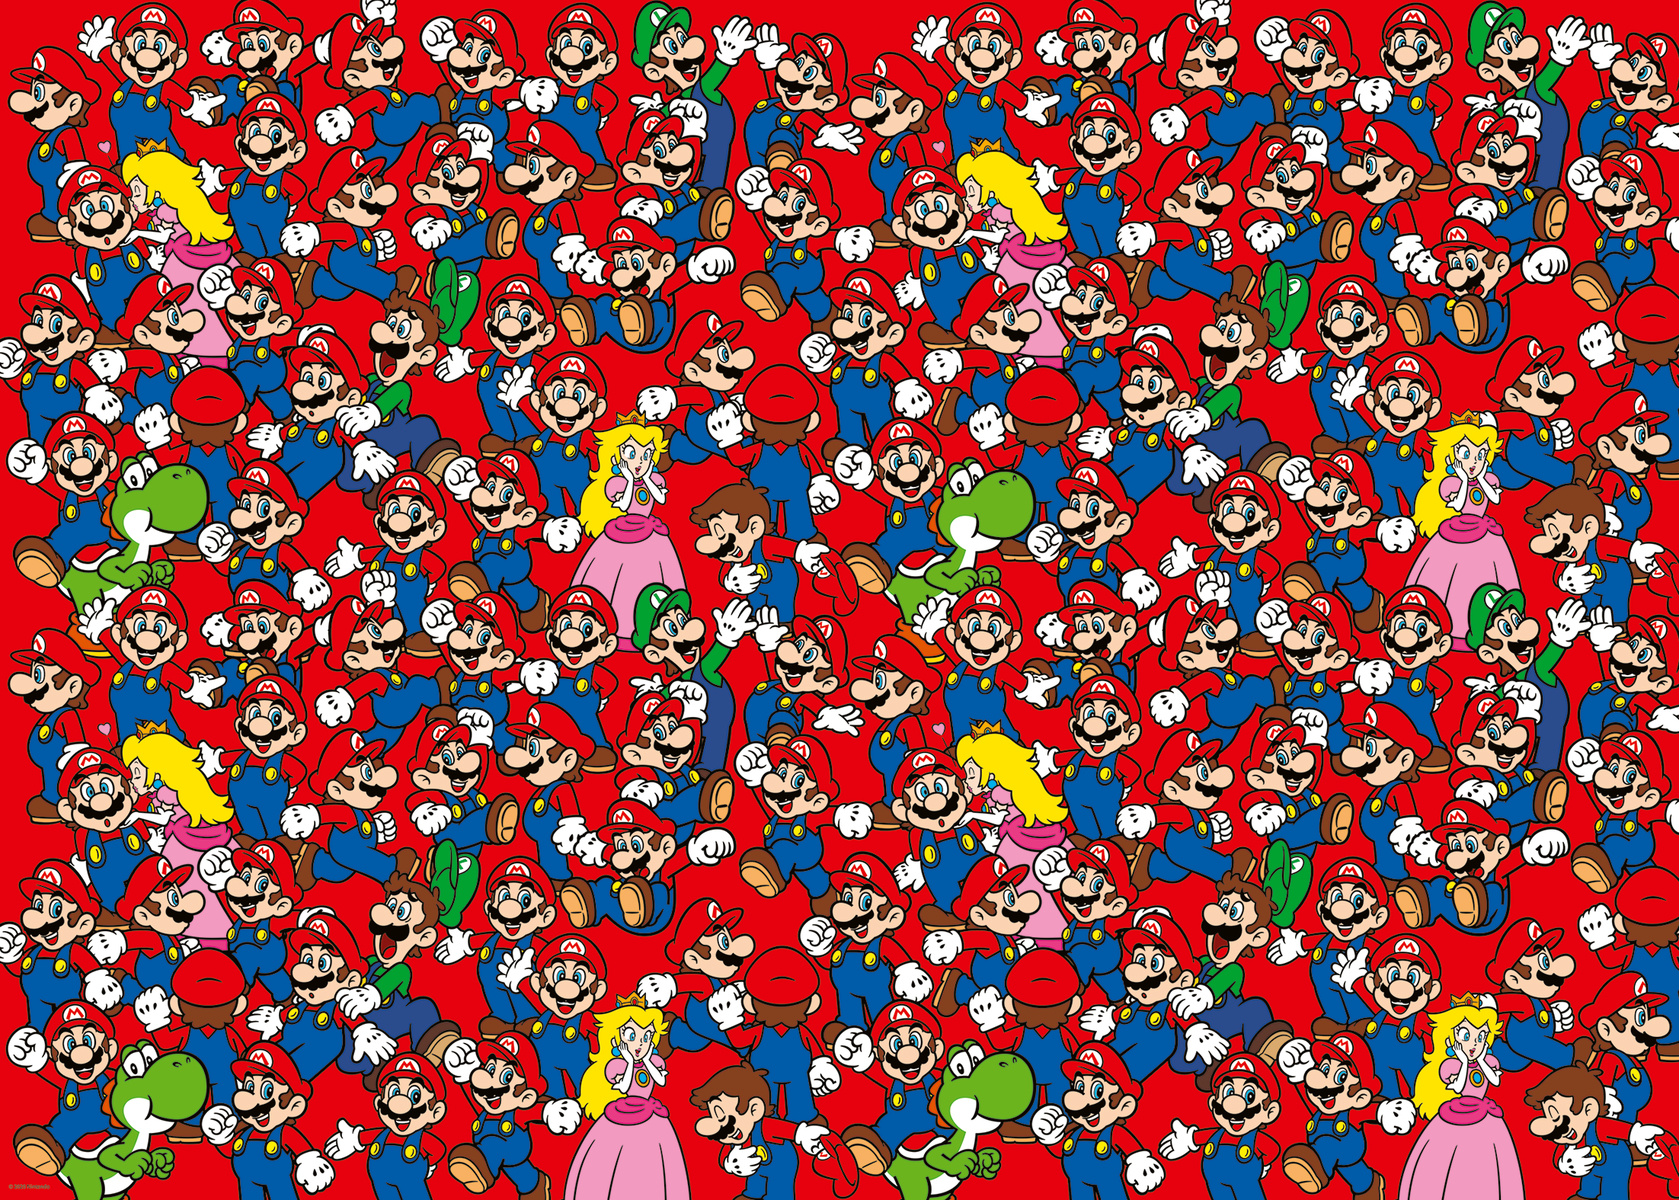 Super Mario - Puzzle 1000 pièces